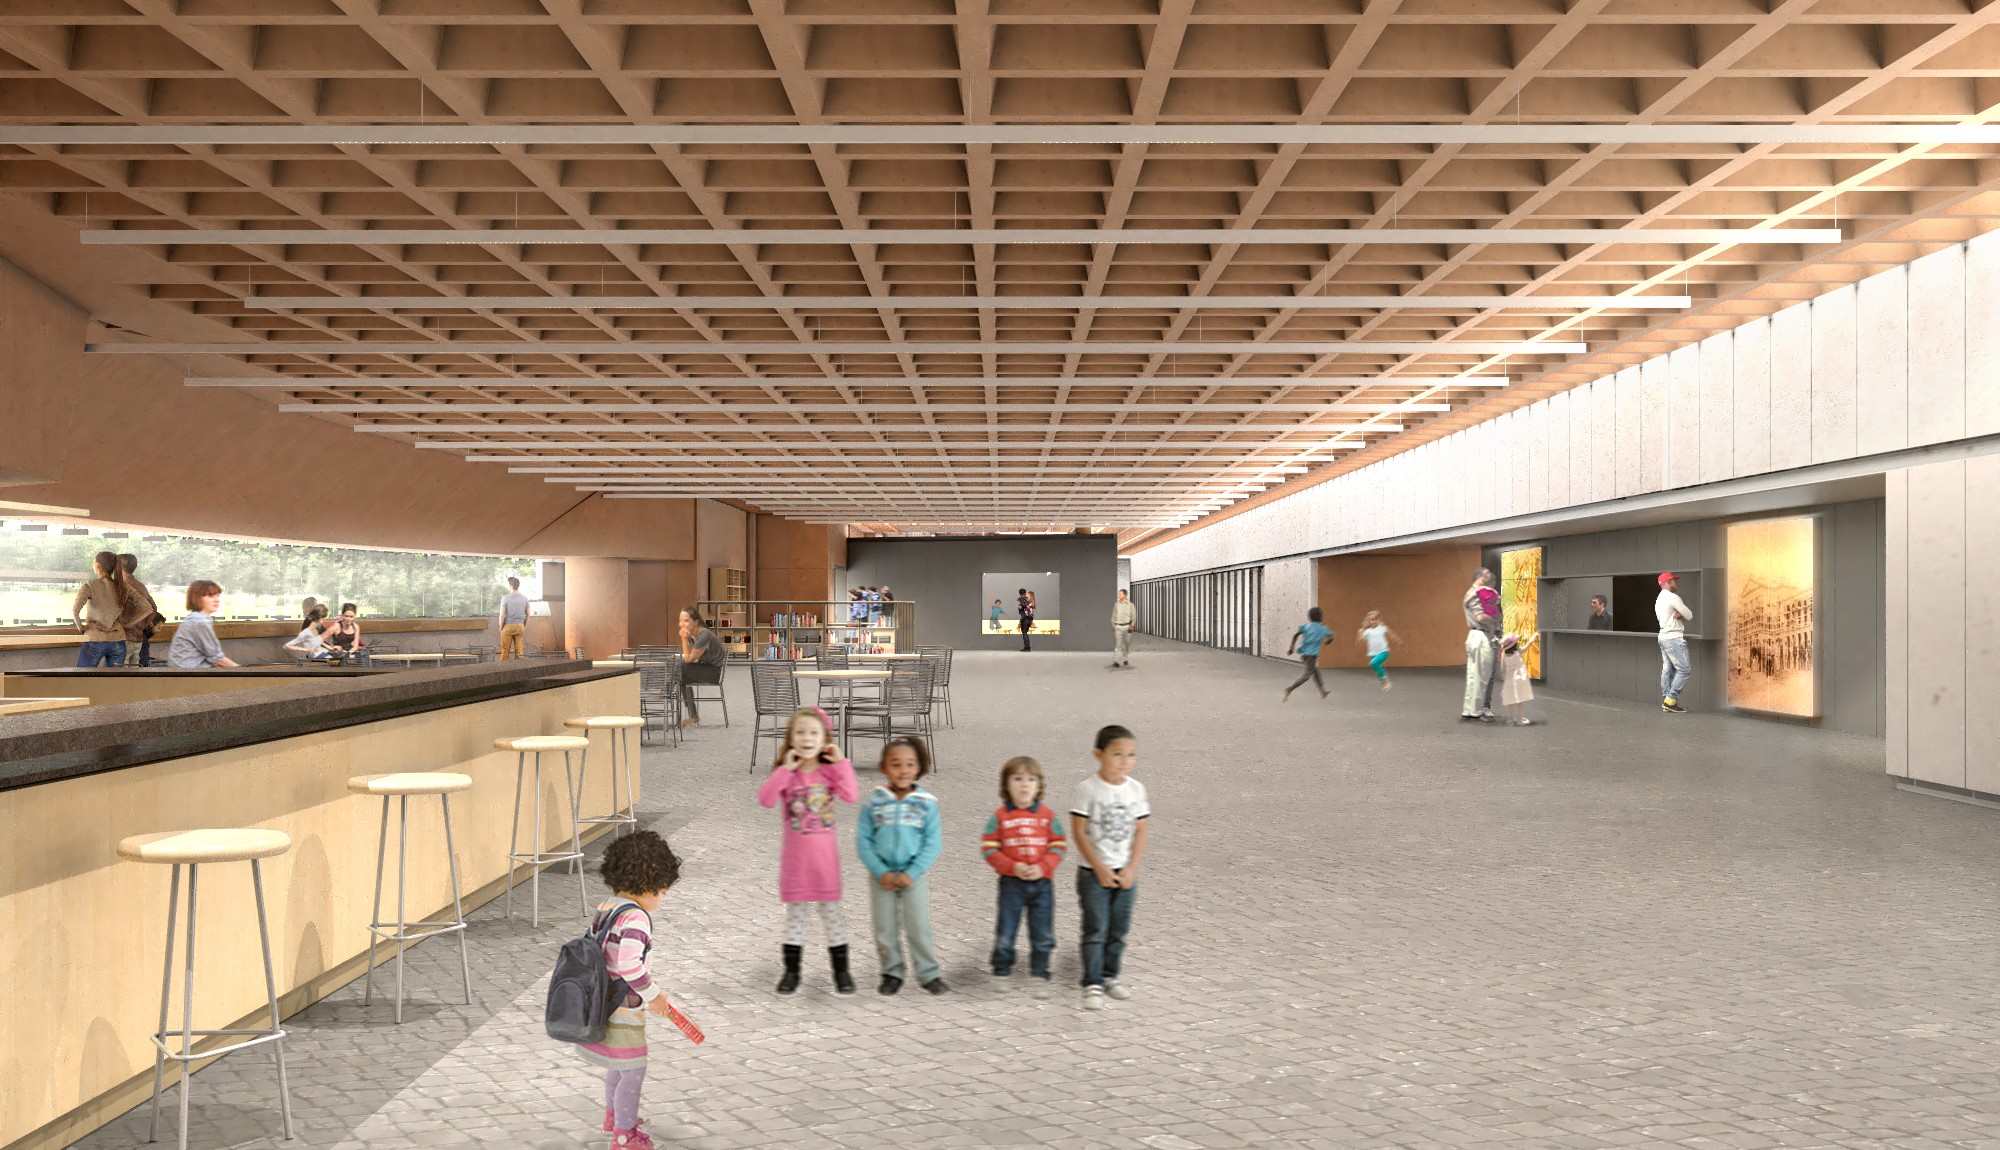 Área ampliada do museu contará com livraria, cafeteria, auditório, espaços educativos, entre outras atrações (Foto: Divulgação)